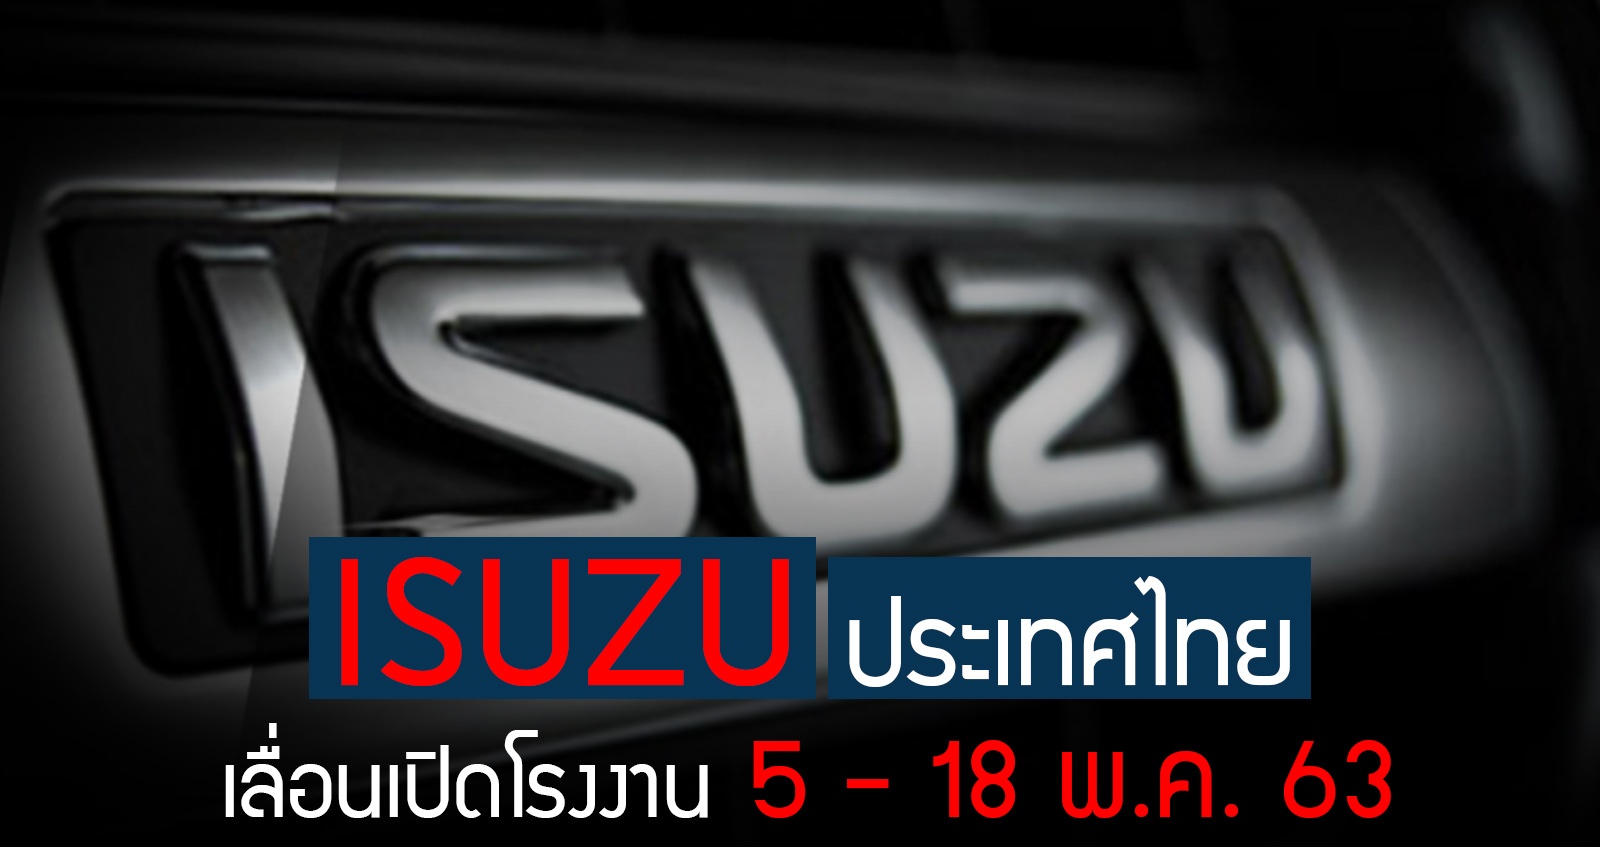 ISUZU ประเทศไทย เลื่อนเปิดโรงงานผลิต 5 – 18 พฤษภาคม 2563